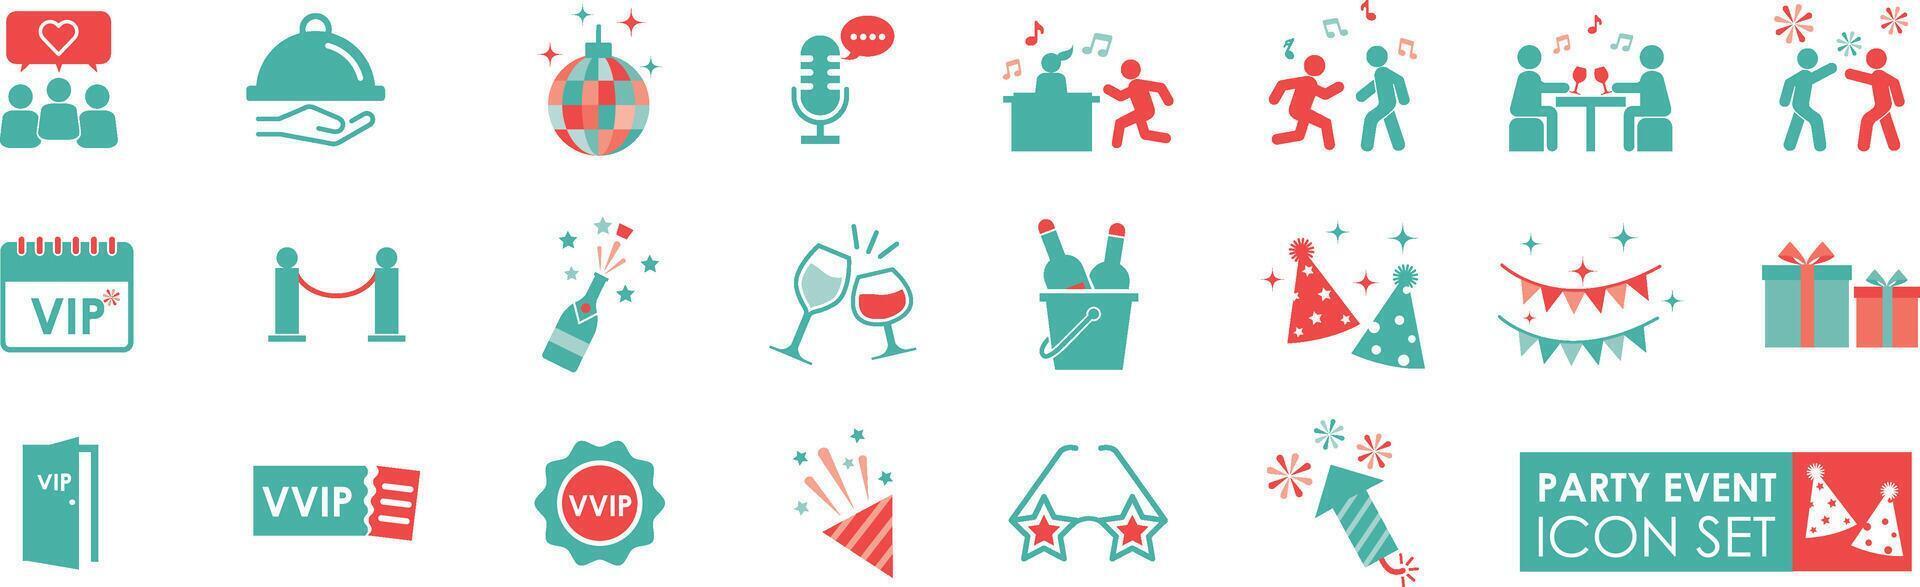 partij evenement pictogrammen set. solide icoon stijl. bevat viering, partij, evenement, feestelijk, vip, amusement, muziek, dansen, confetti, ballonnen en wimpels, illustraties. vector